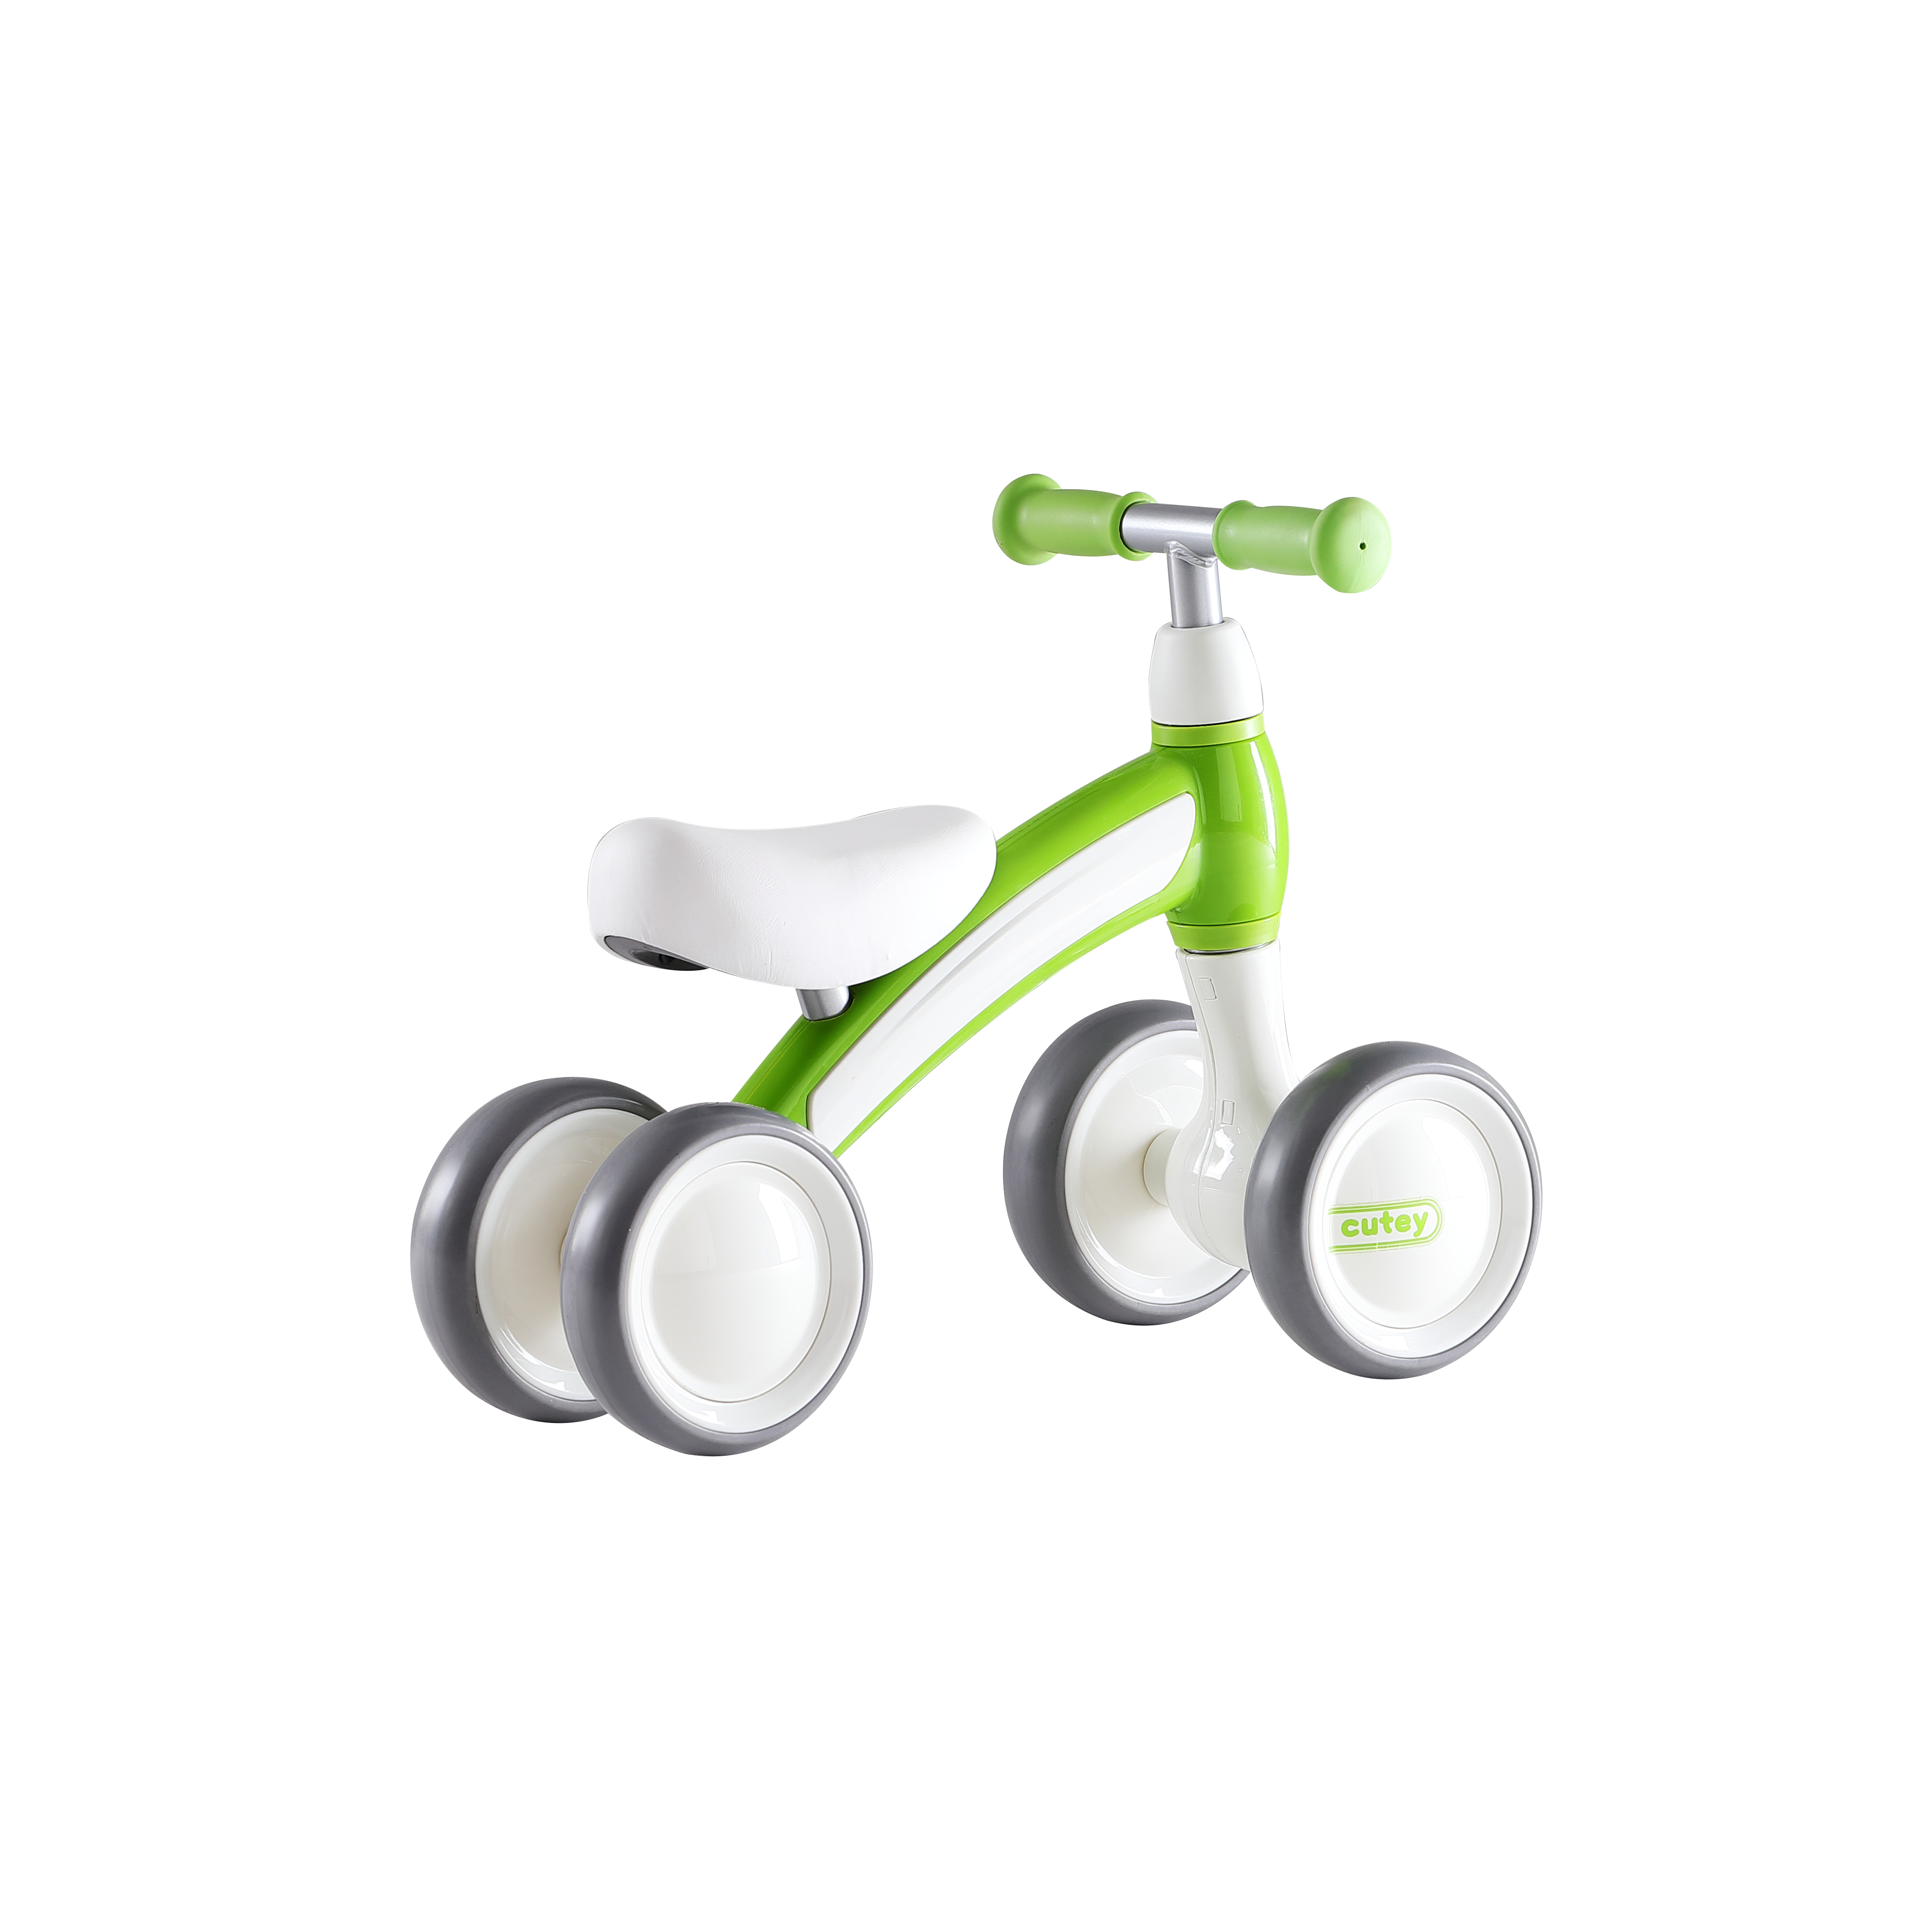 Біговел дитячий Qplay Cutey, чотириколісний, зелений (CuteyGreen) - фото 2